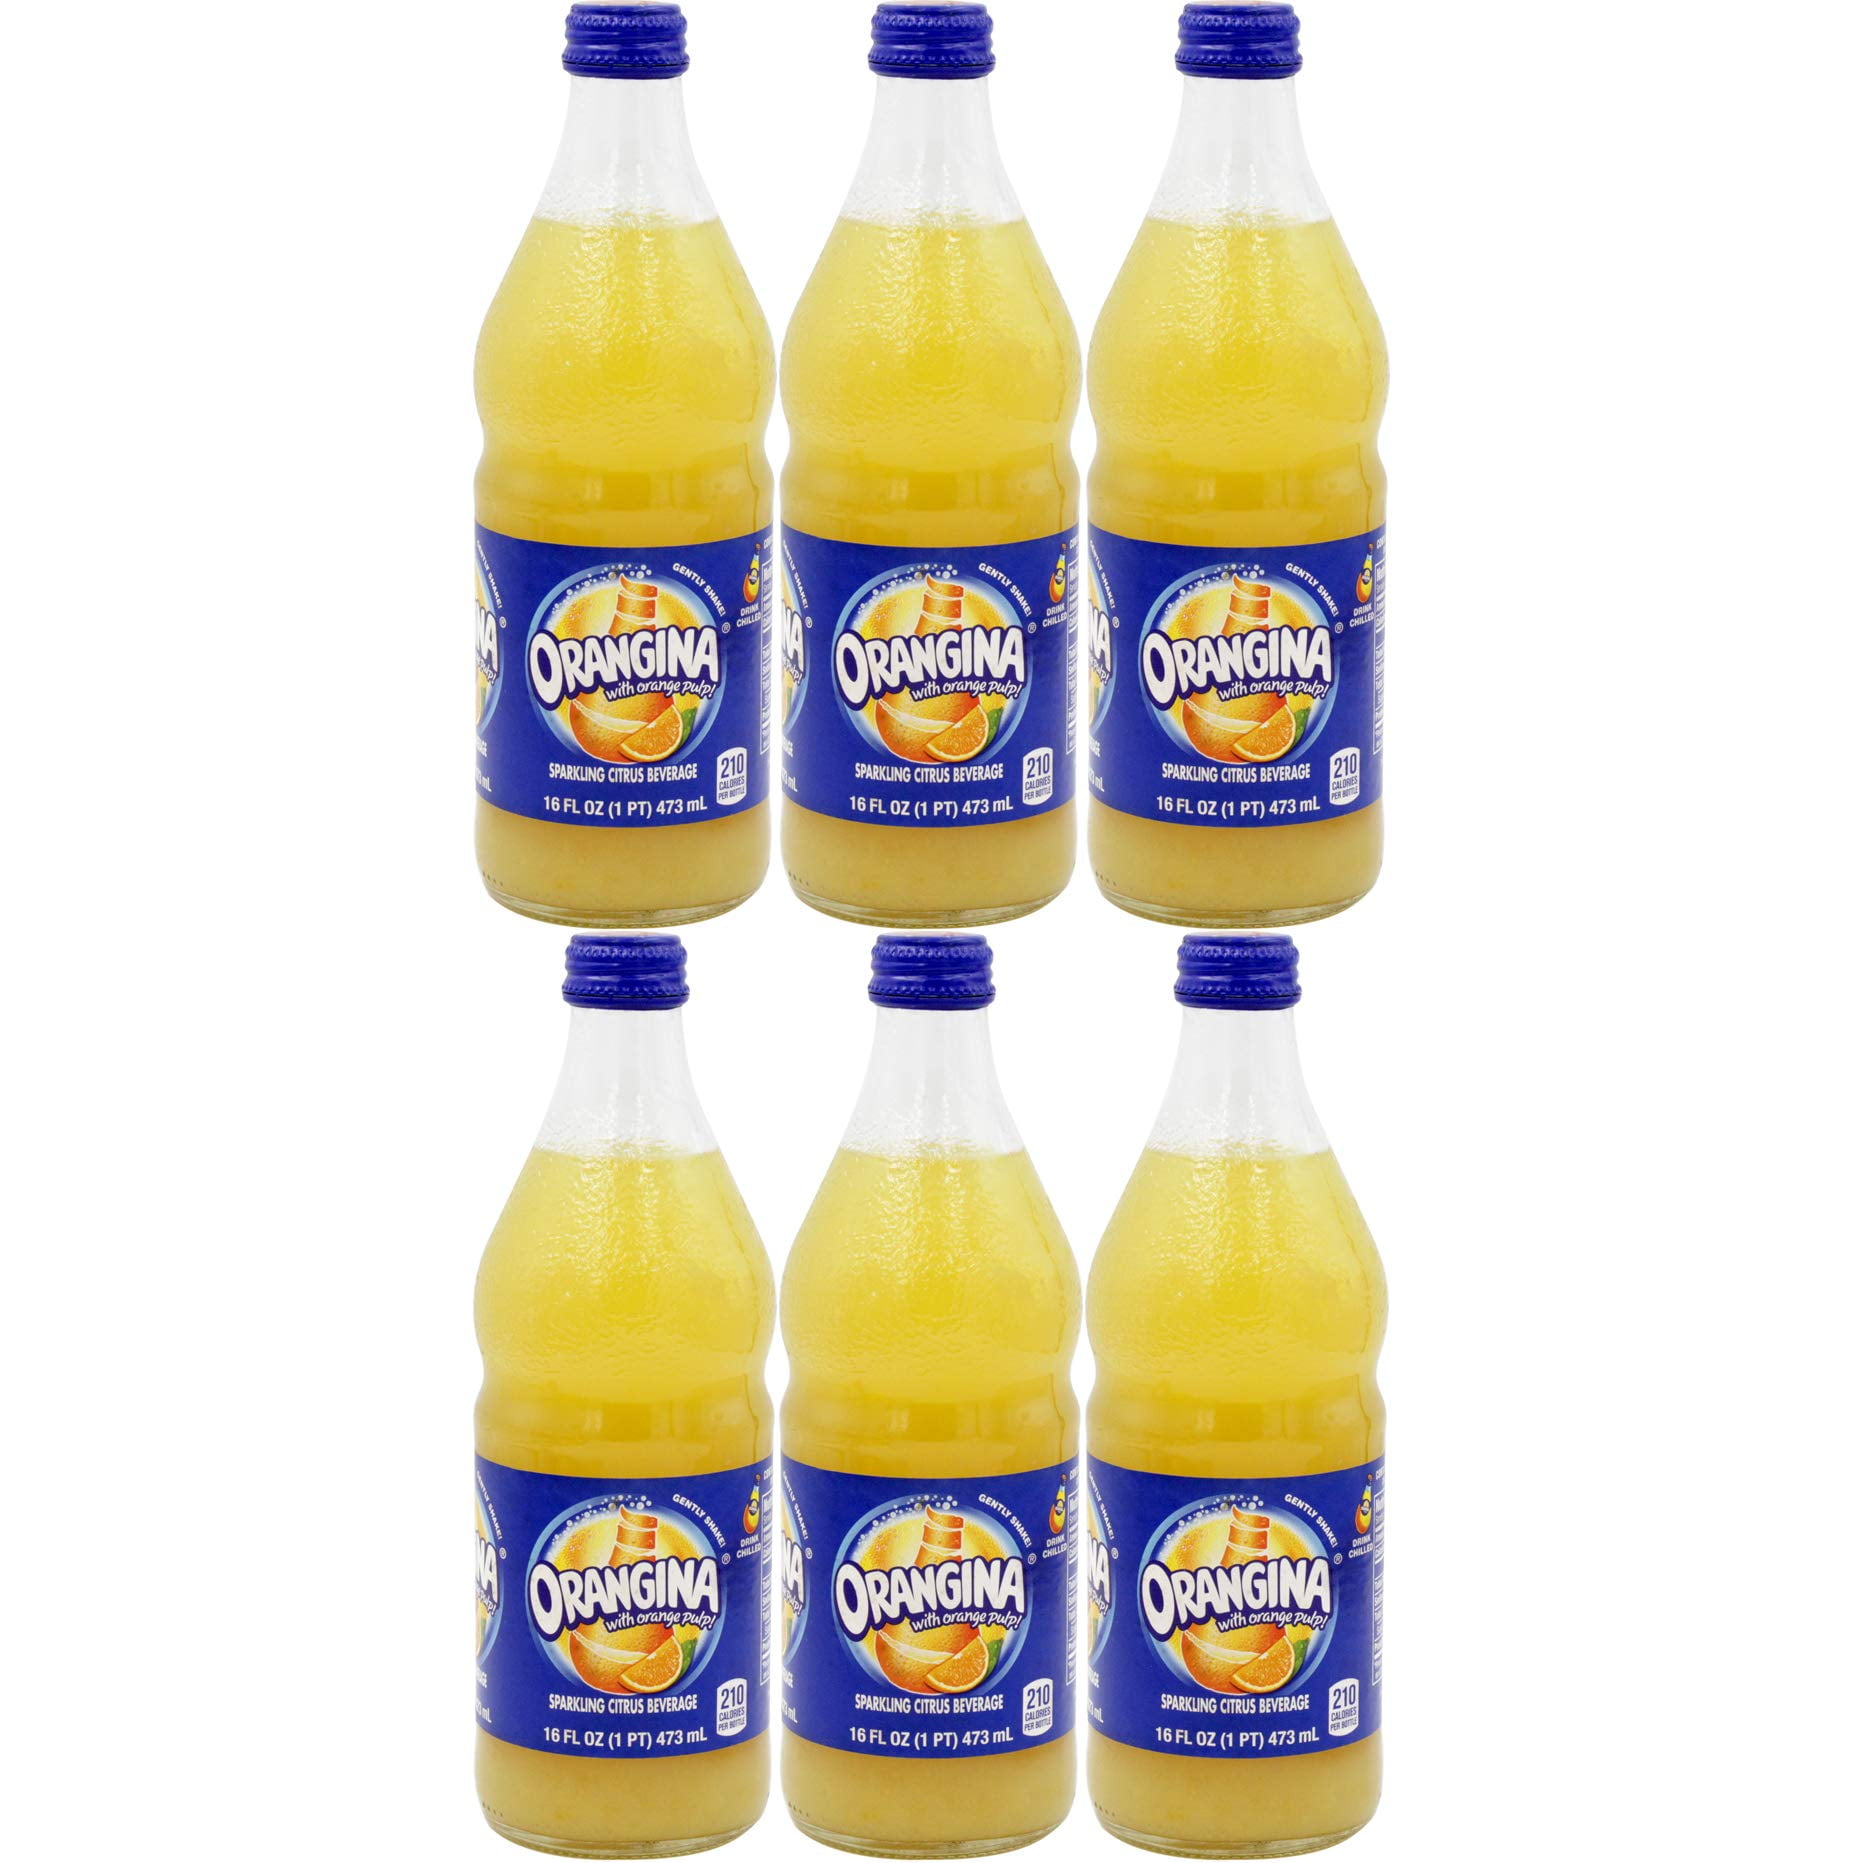 Orangina Sparkling Citrus Beverage With Pulp 16 Fl Oz Glass Bottle Pack Of 6 Total Of 96 Fl Oz Walmart Com Walmart Com